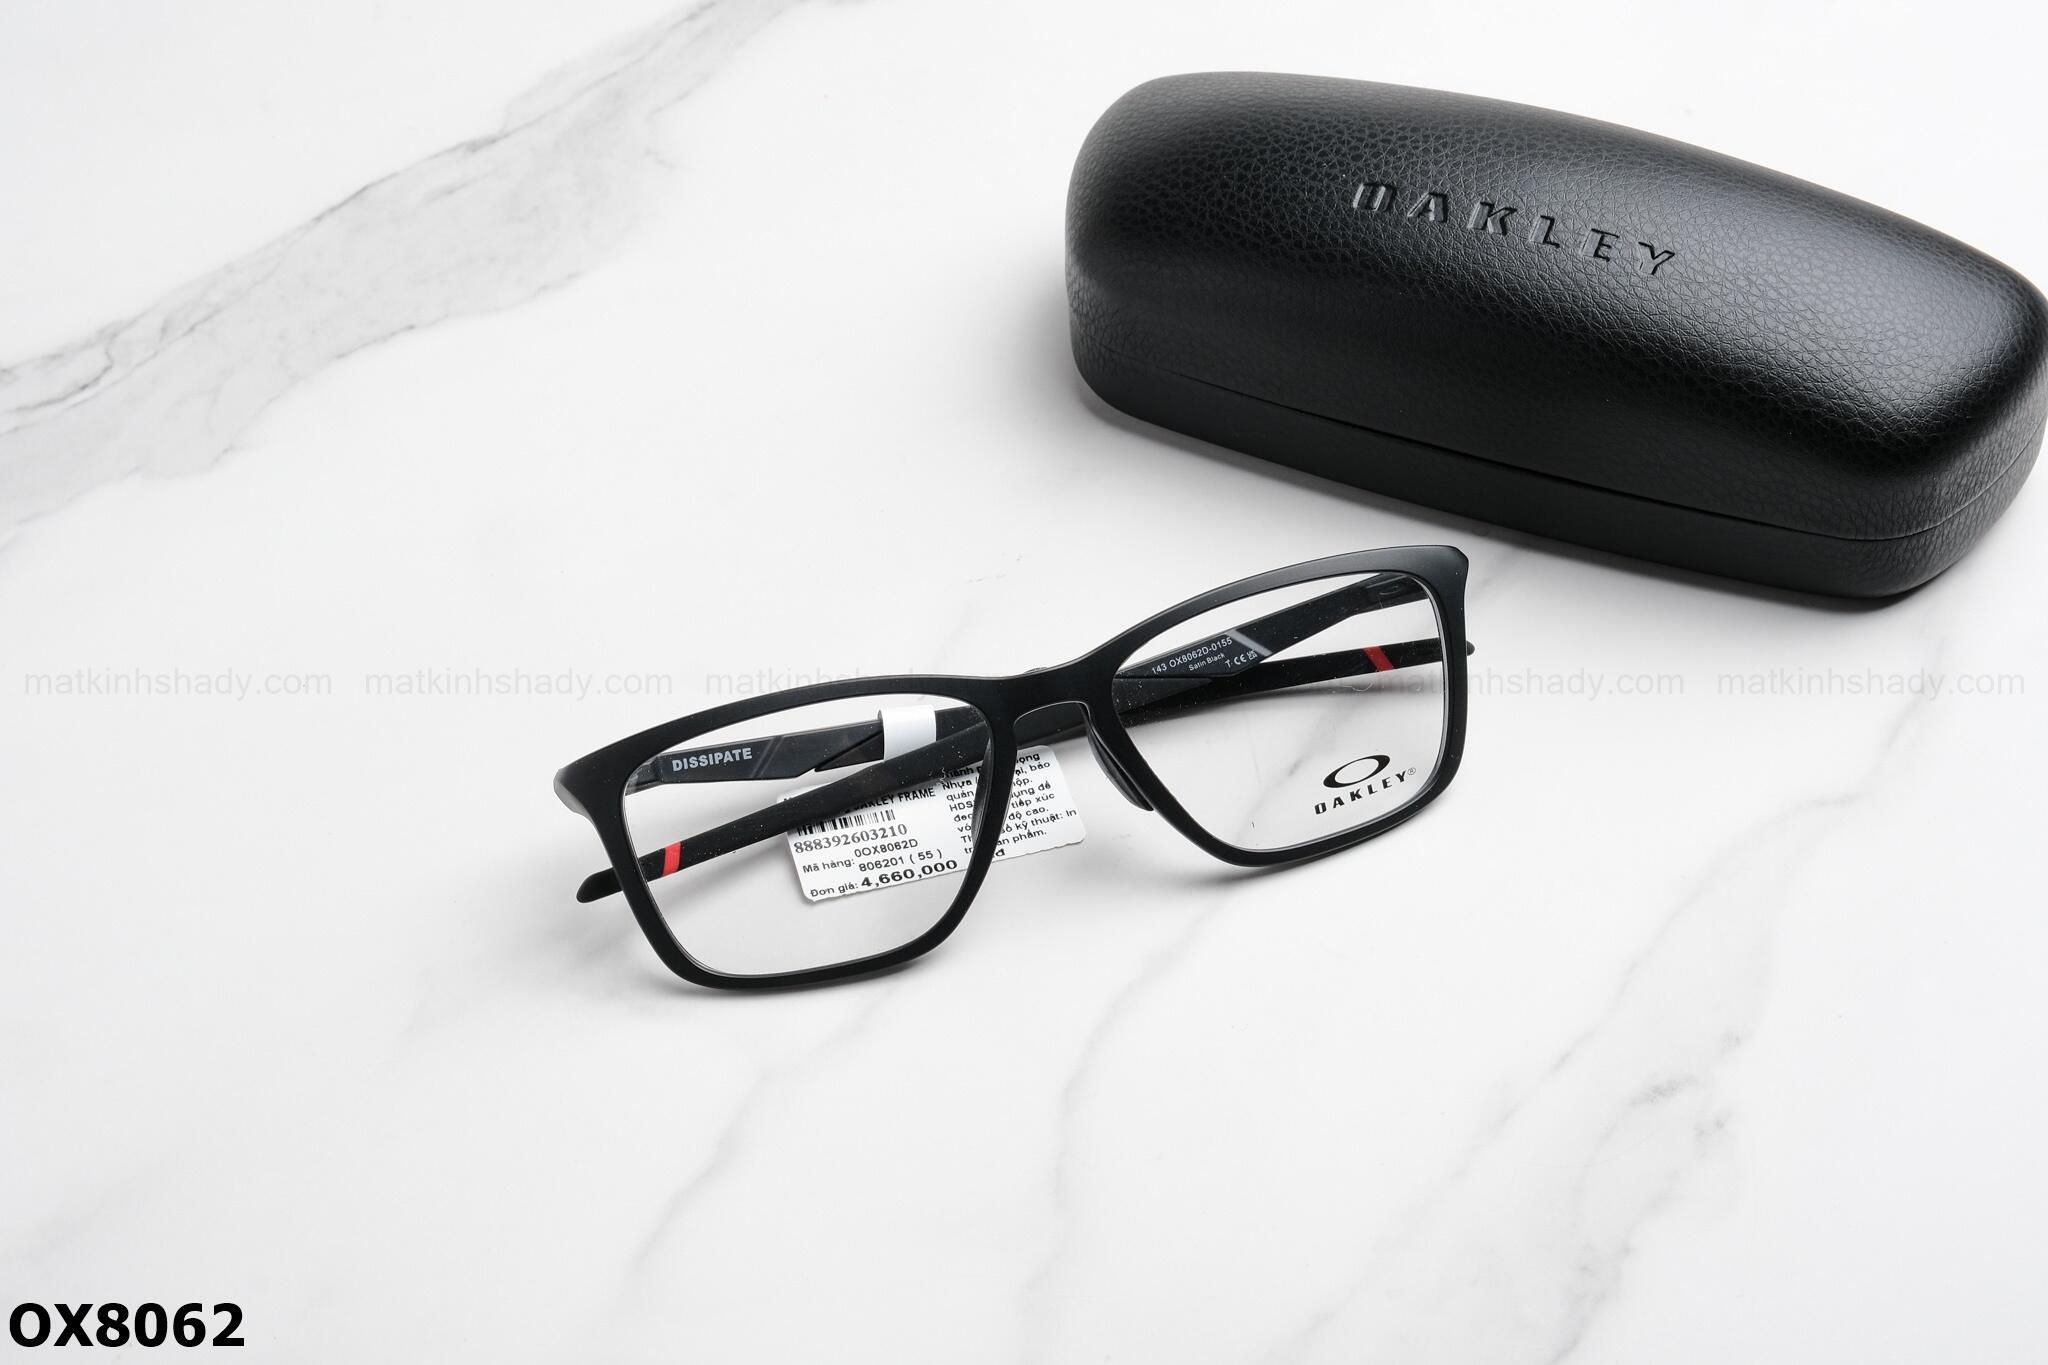  Oakley Eyewear - Glasses - OX8062 